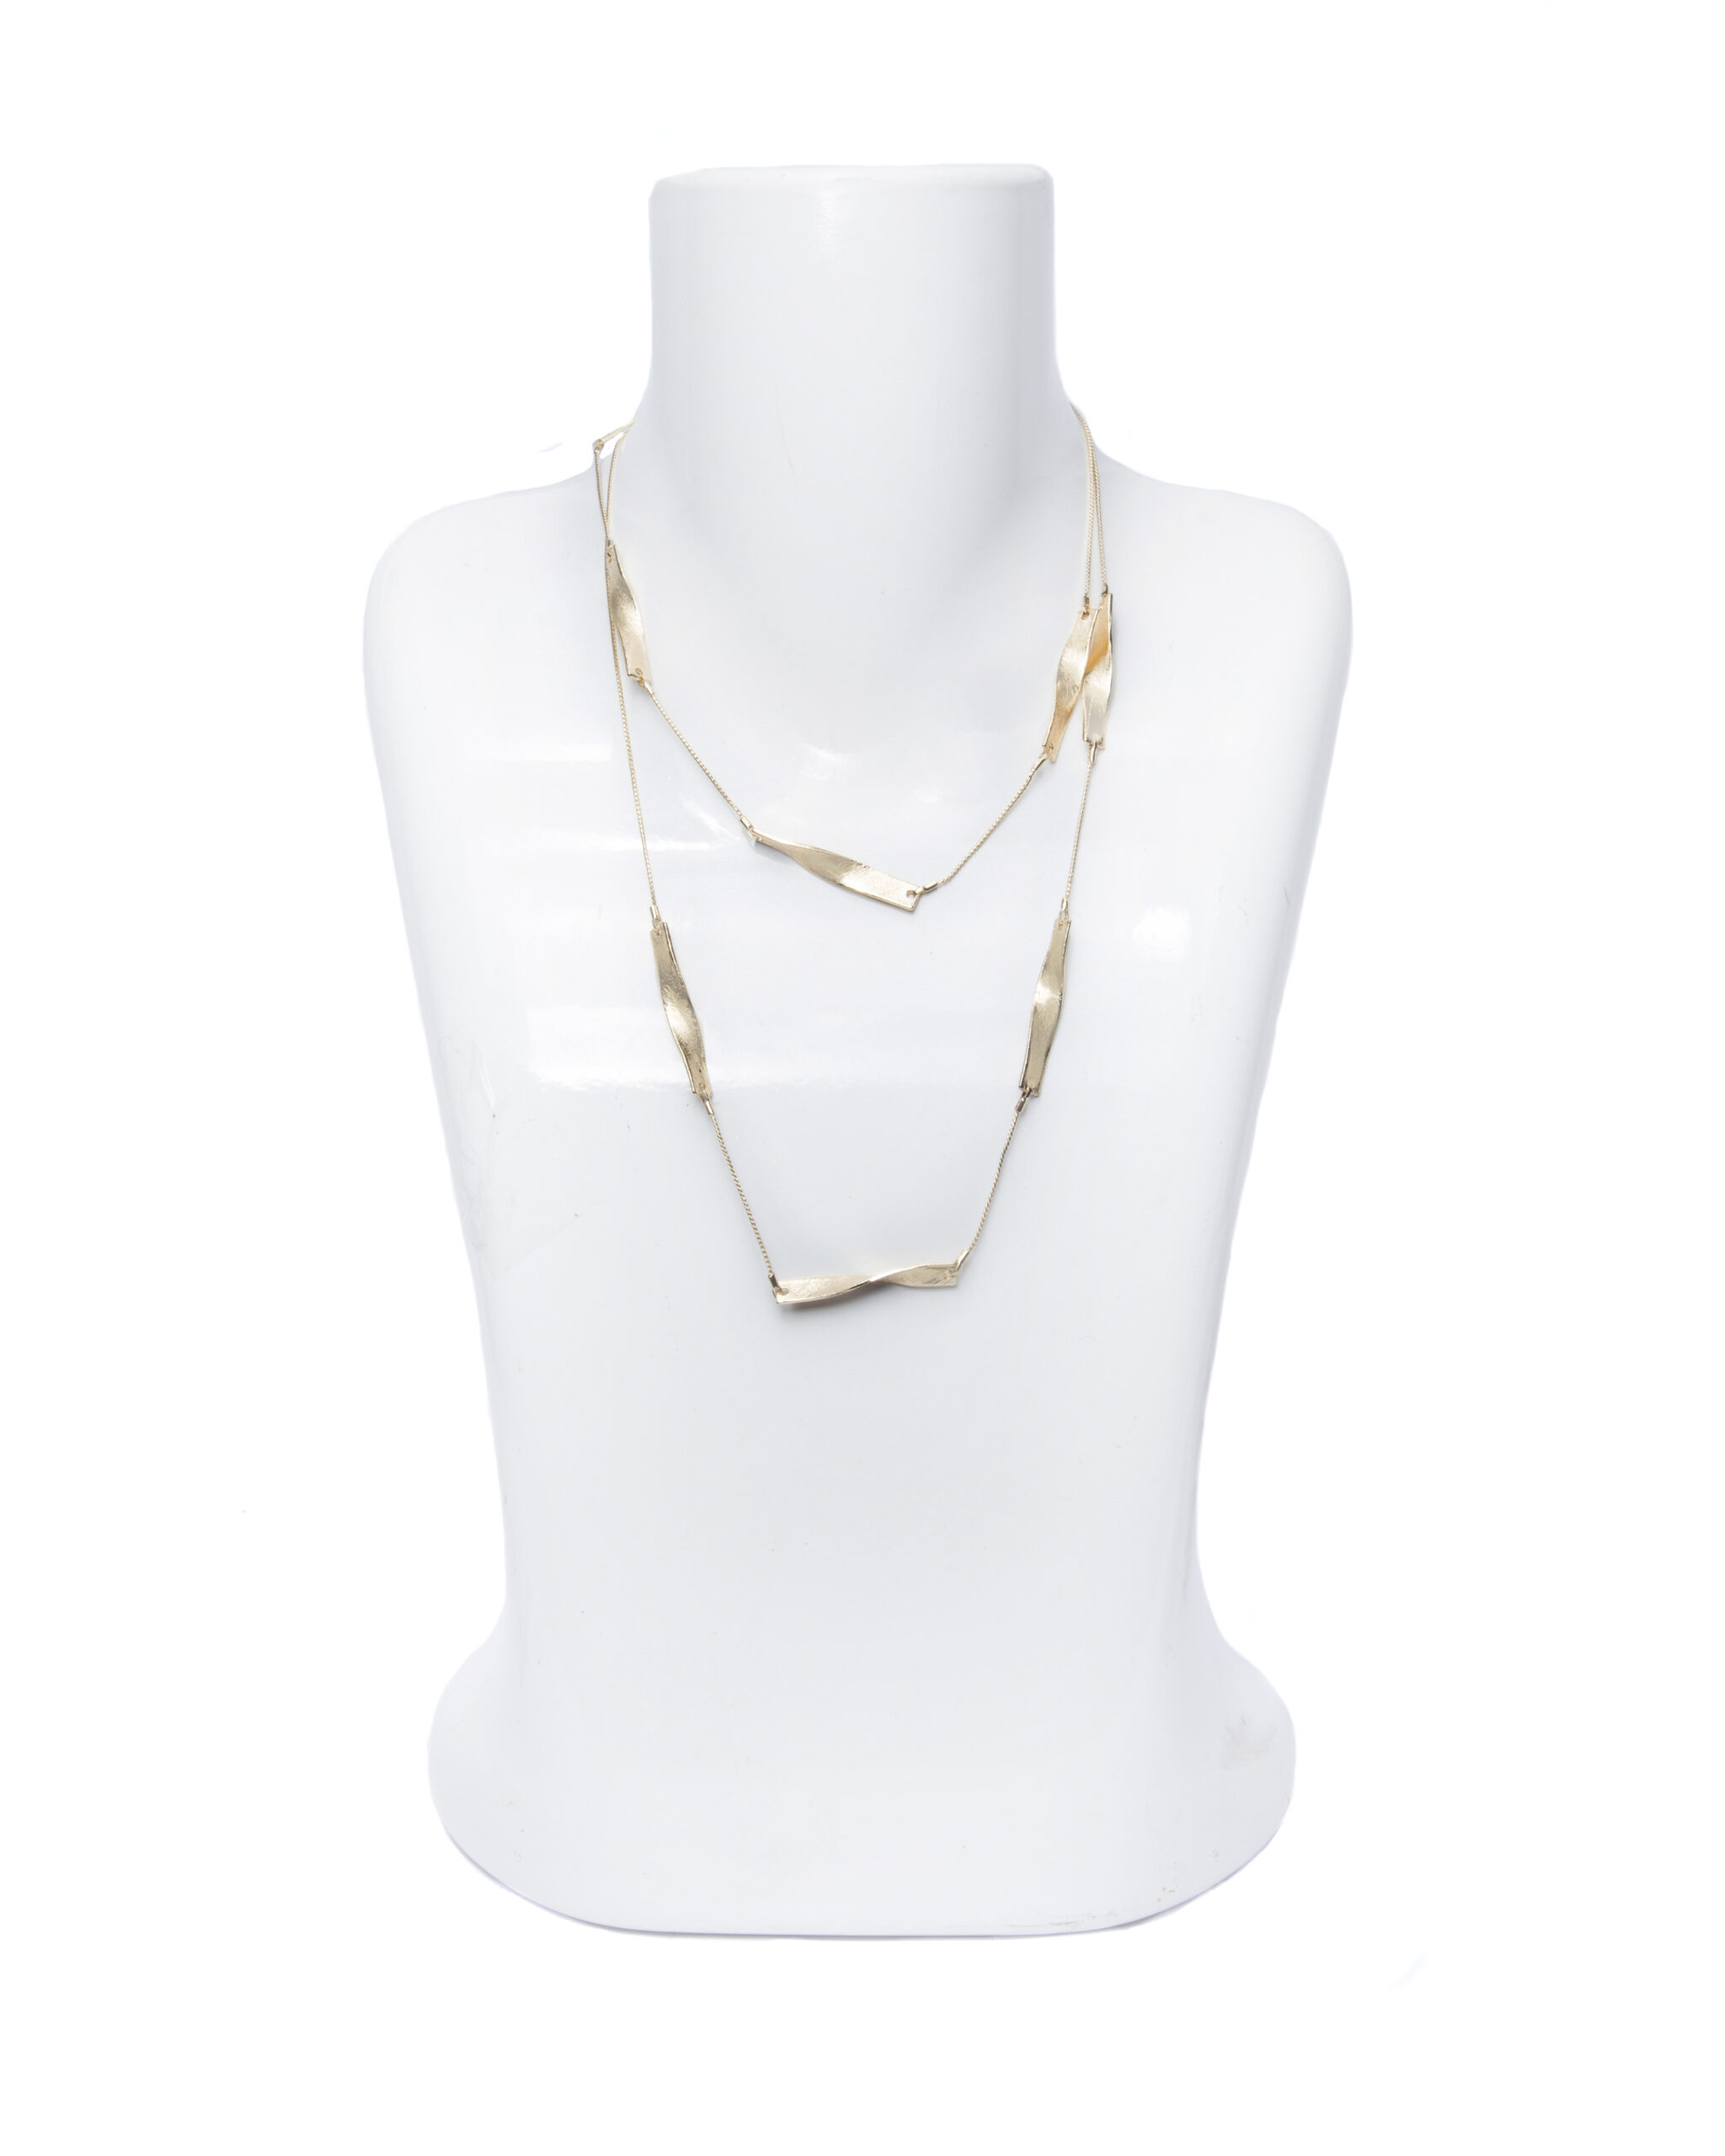 TwistedLink Necklace (90cm)